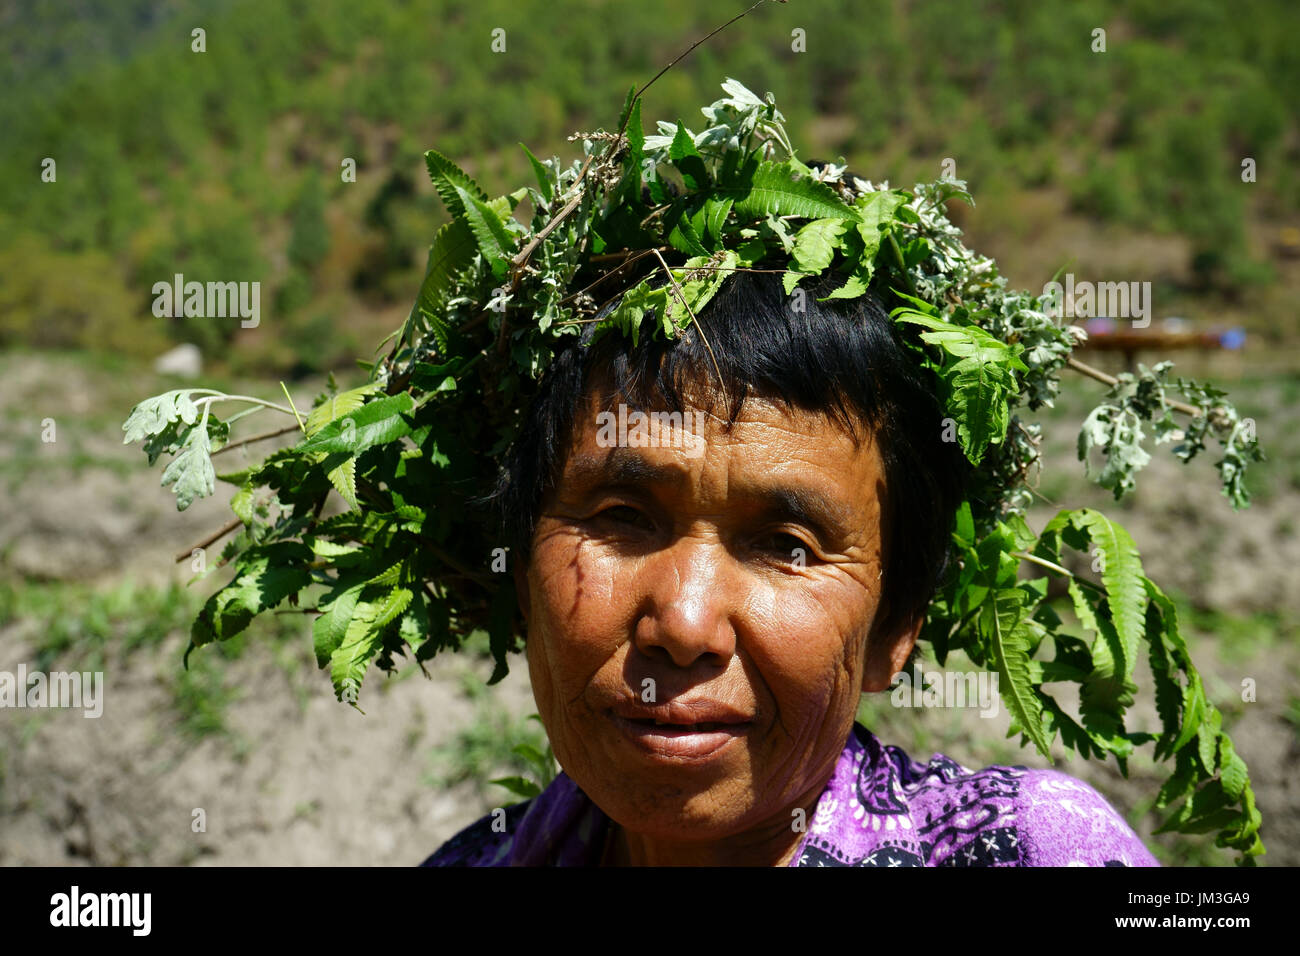 Piante e foglie di proteggere testa di donna da sole mentre beanfield sarchiatura, Punakha valley, Bhutan Foto Stock